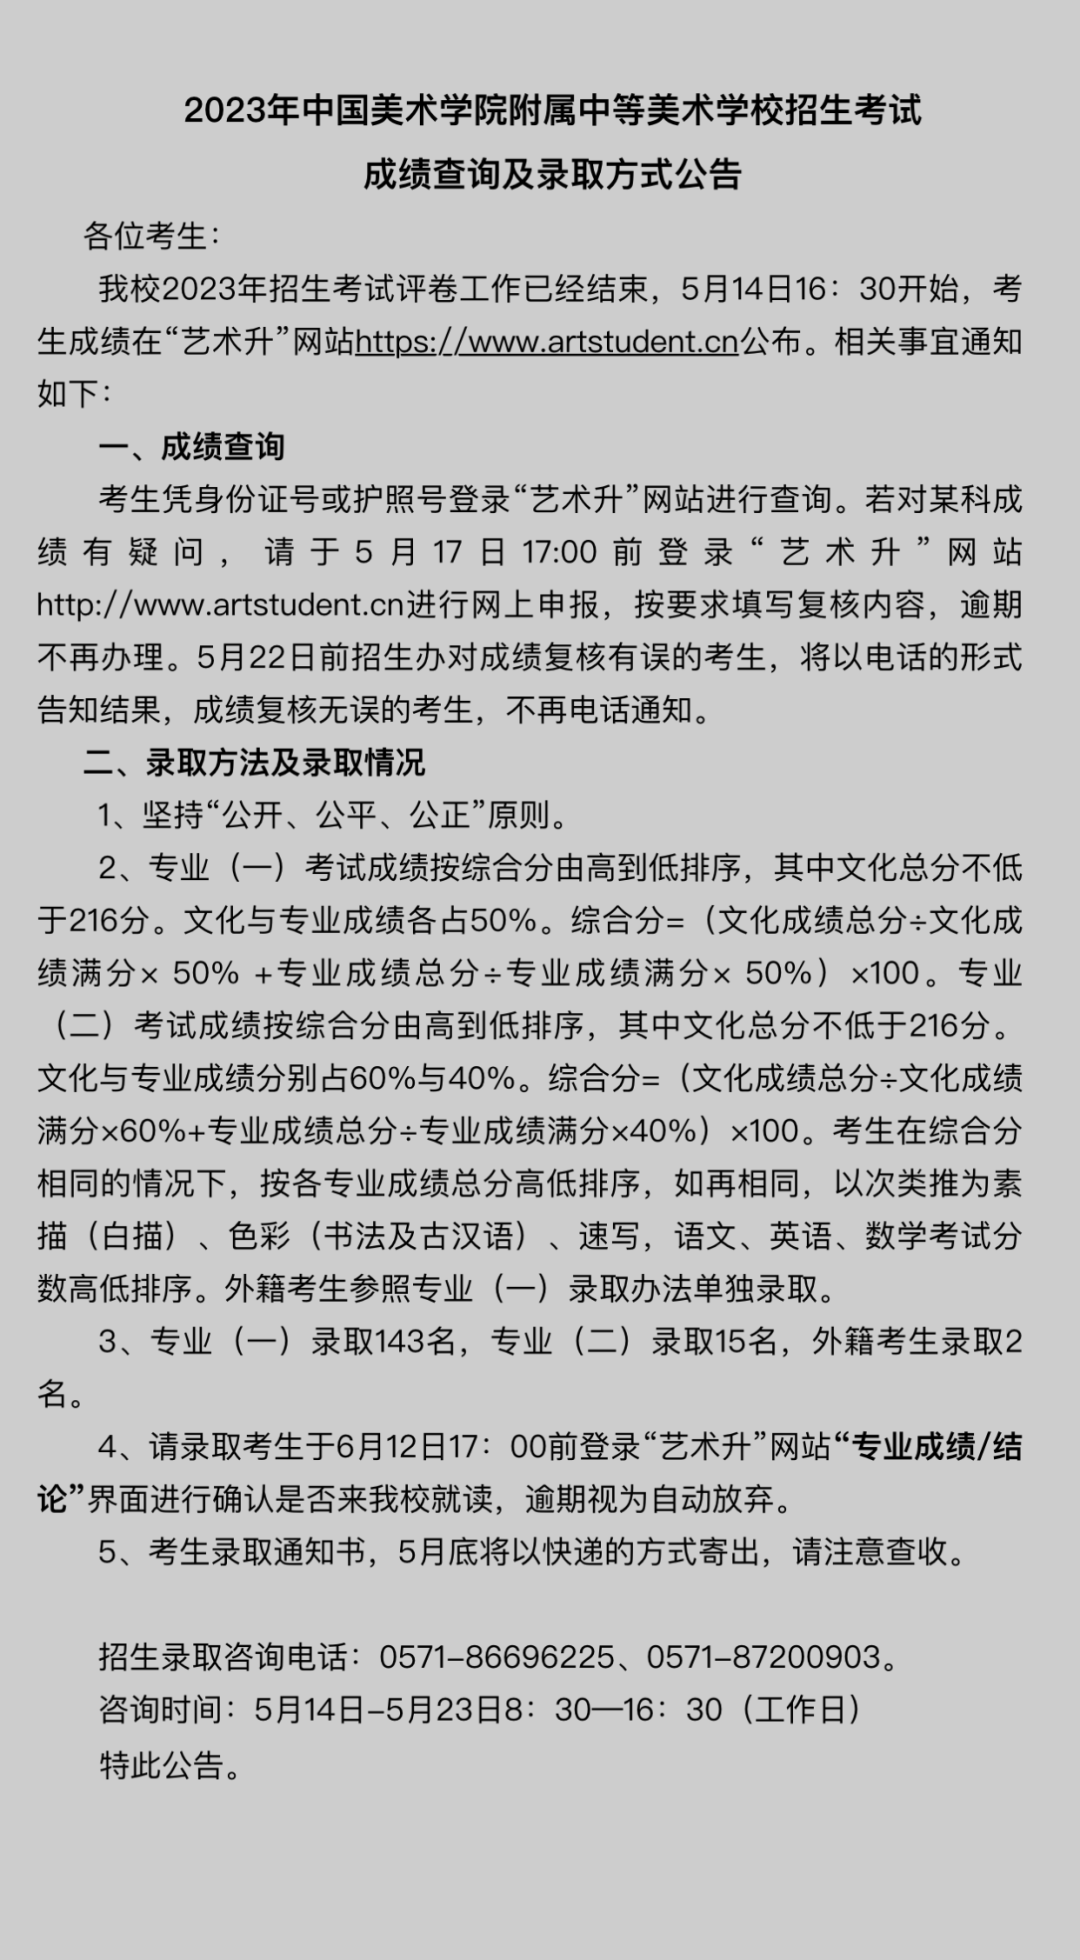 2023年中国美术学院附属中等美术学校招生考试成绩查询及录取方式公告